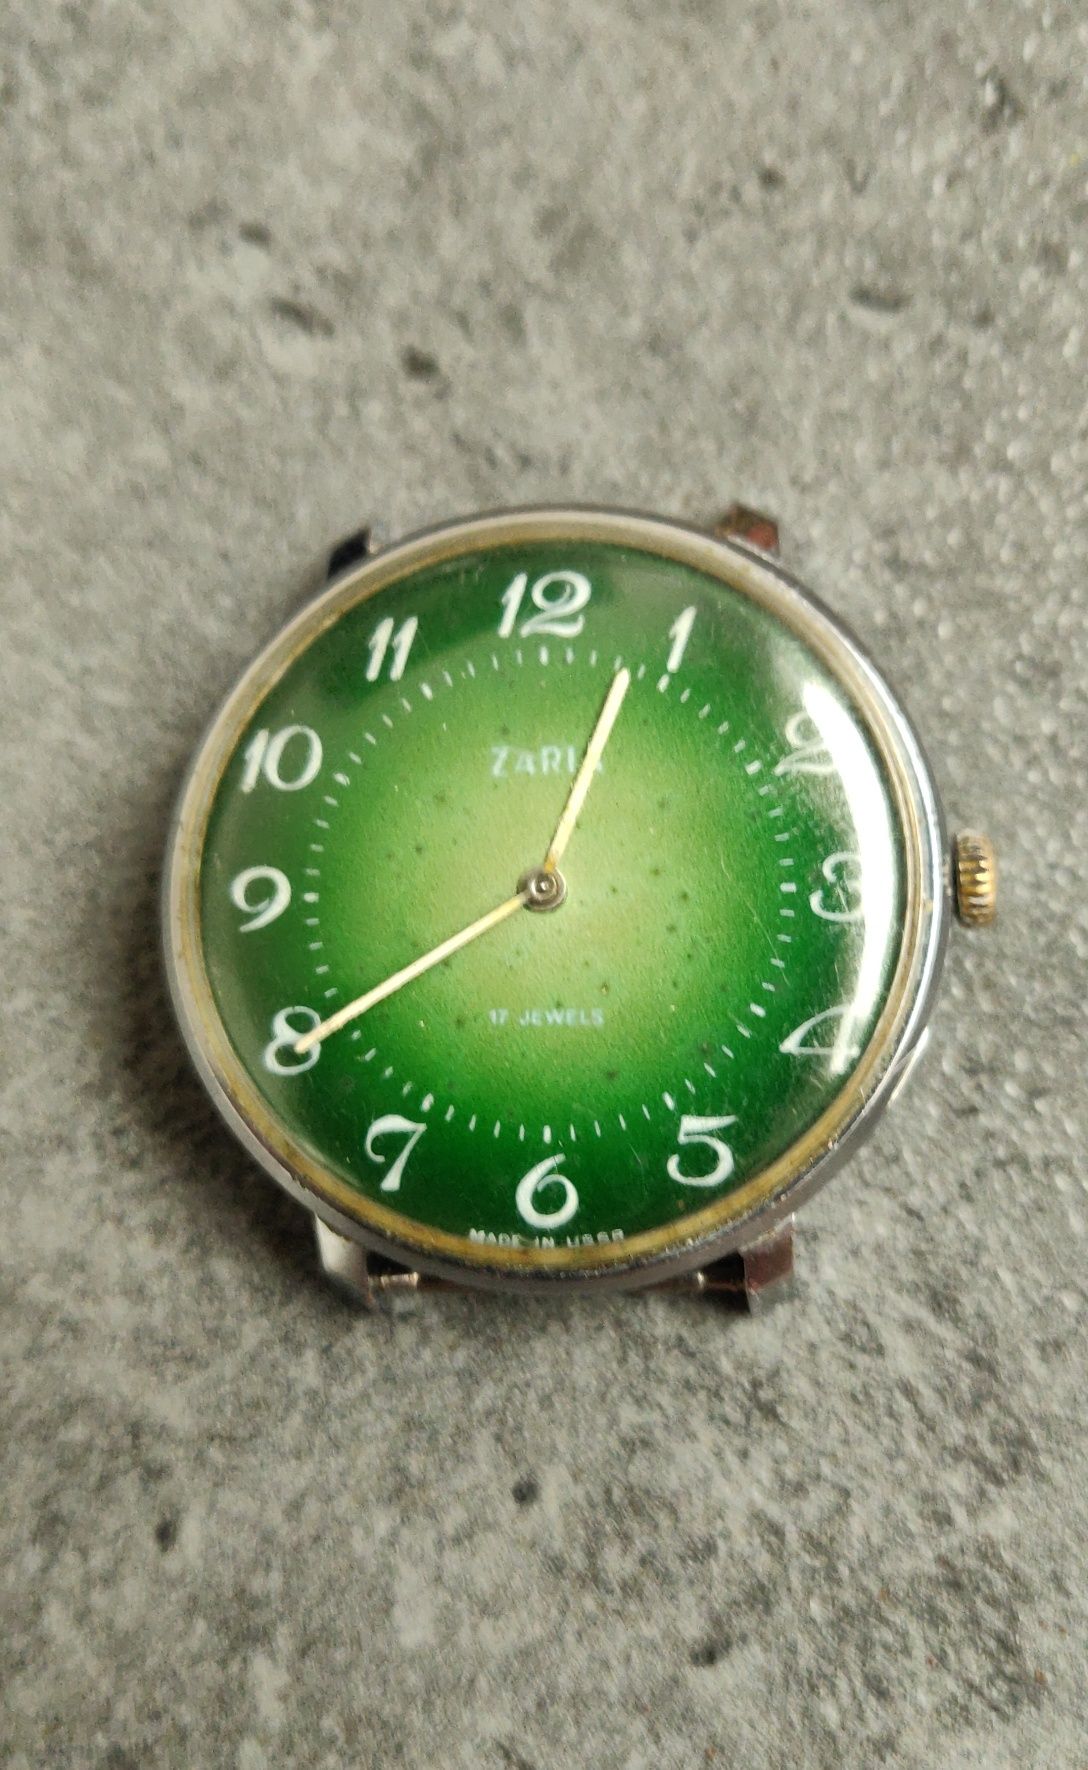 Zegarek zaria ( zarja ) PRL - sprawny